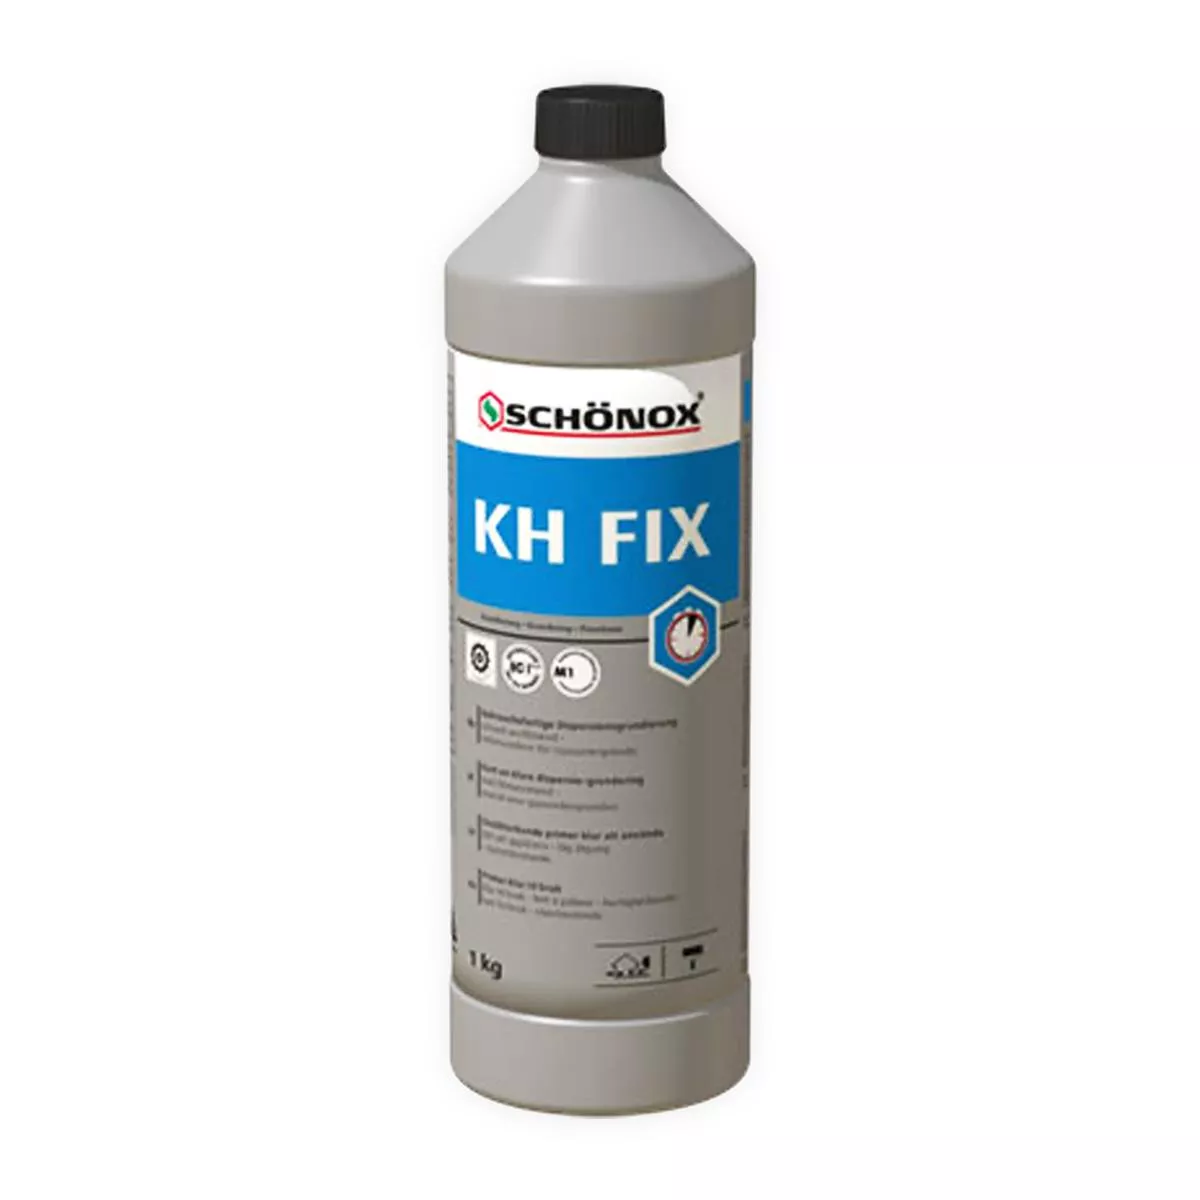 Primaire Prêt à l&#39;emploi Schönox KH FIX dispersion adhésive en résine synthétique 1 kg